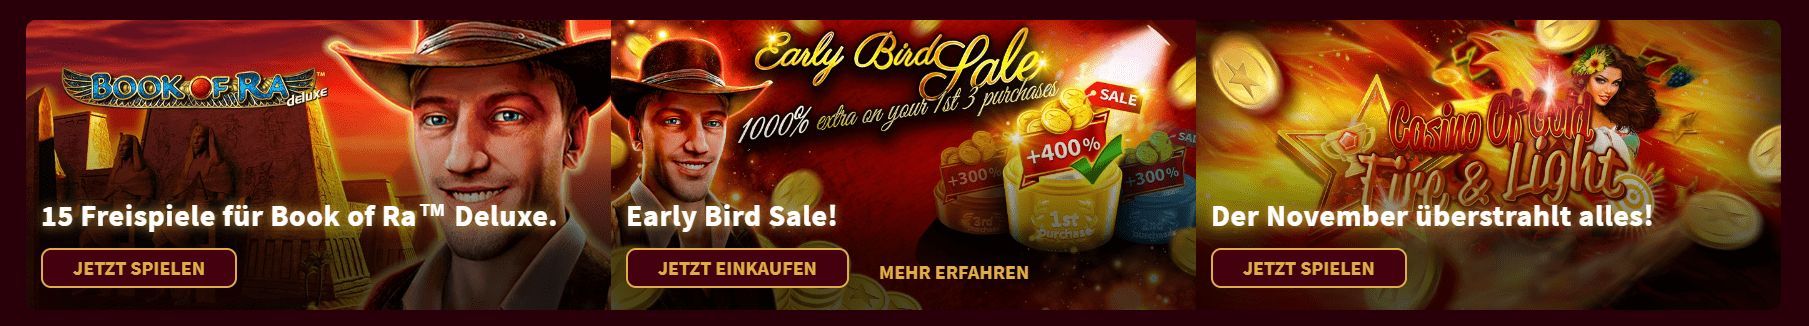 Gold Of Casino Deutschland